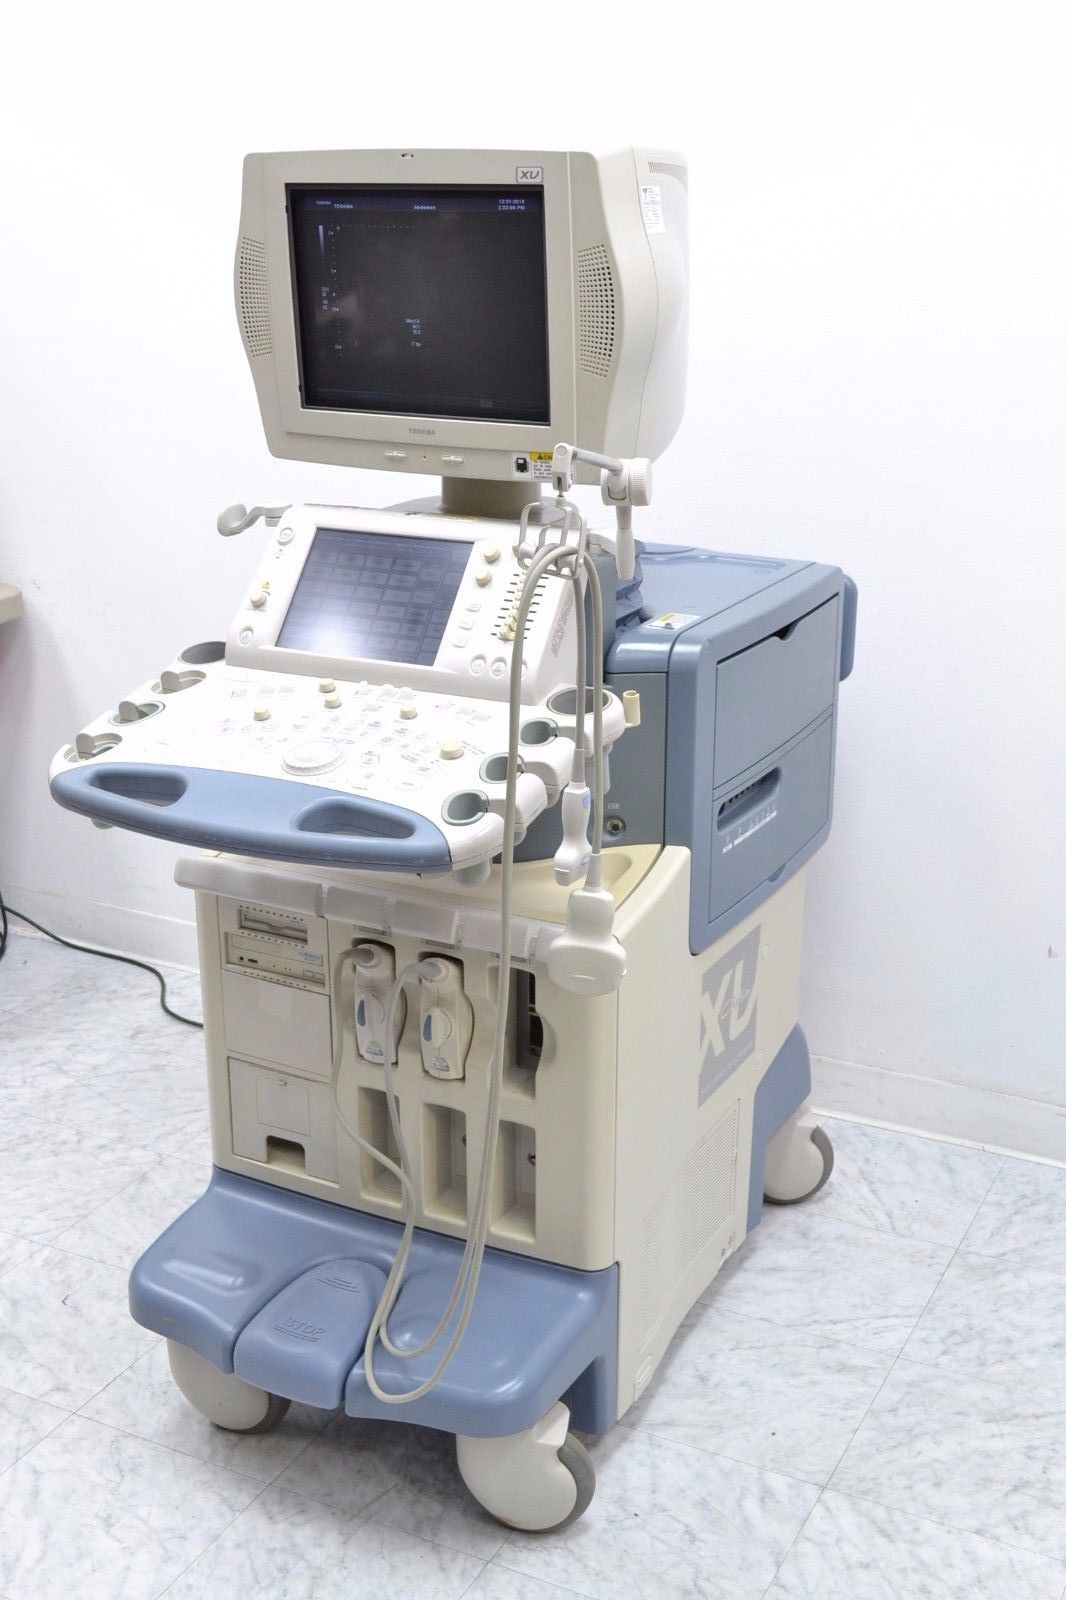 Toshiba SSA-770A Aplio XV Diagnostic Ultrasound W/ PVT-385BT/ PLT-1204AT Probes DIAGNOSTIC ULTRASOUND MACHINES FOR SALE